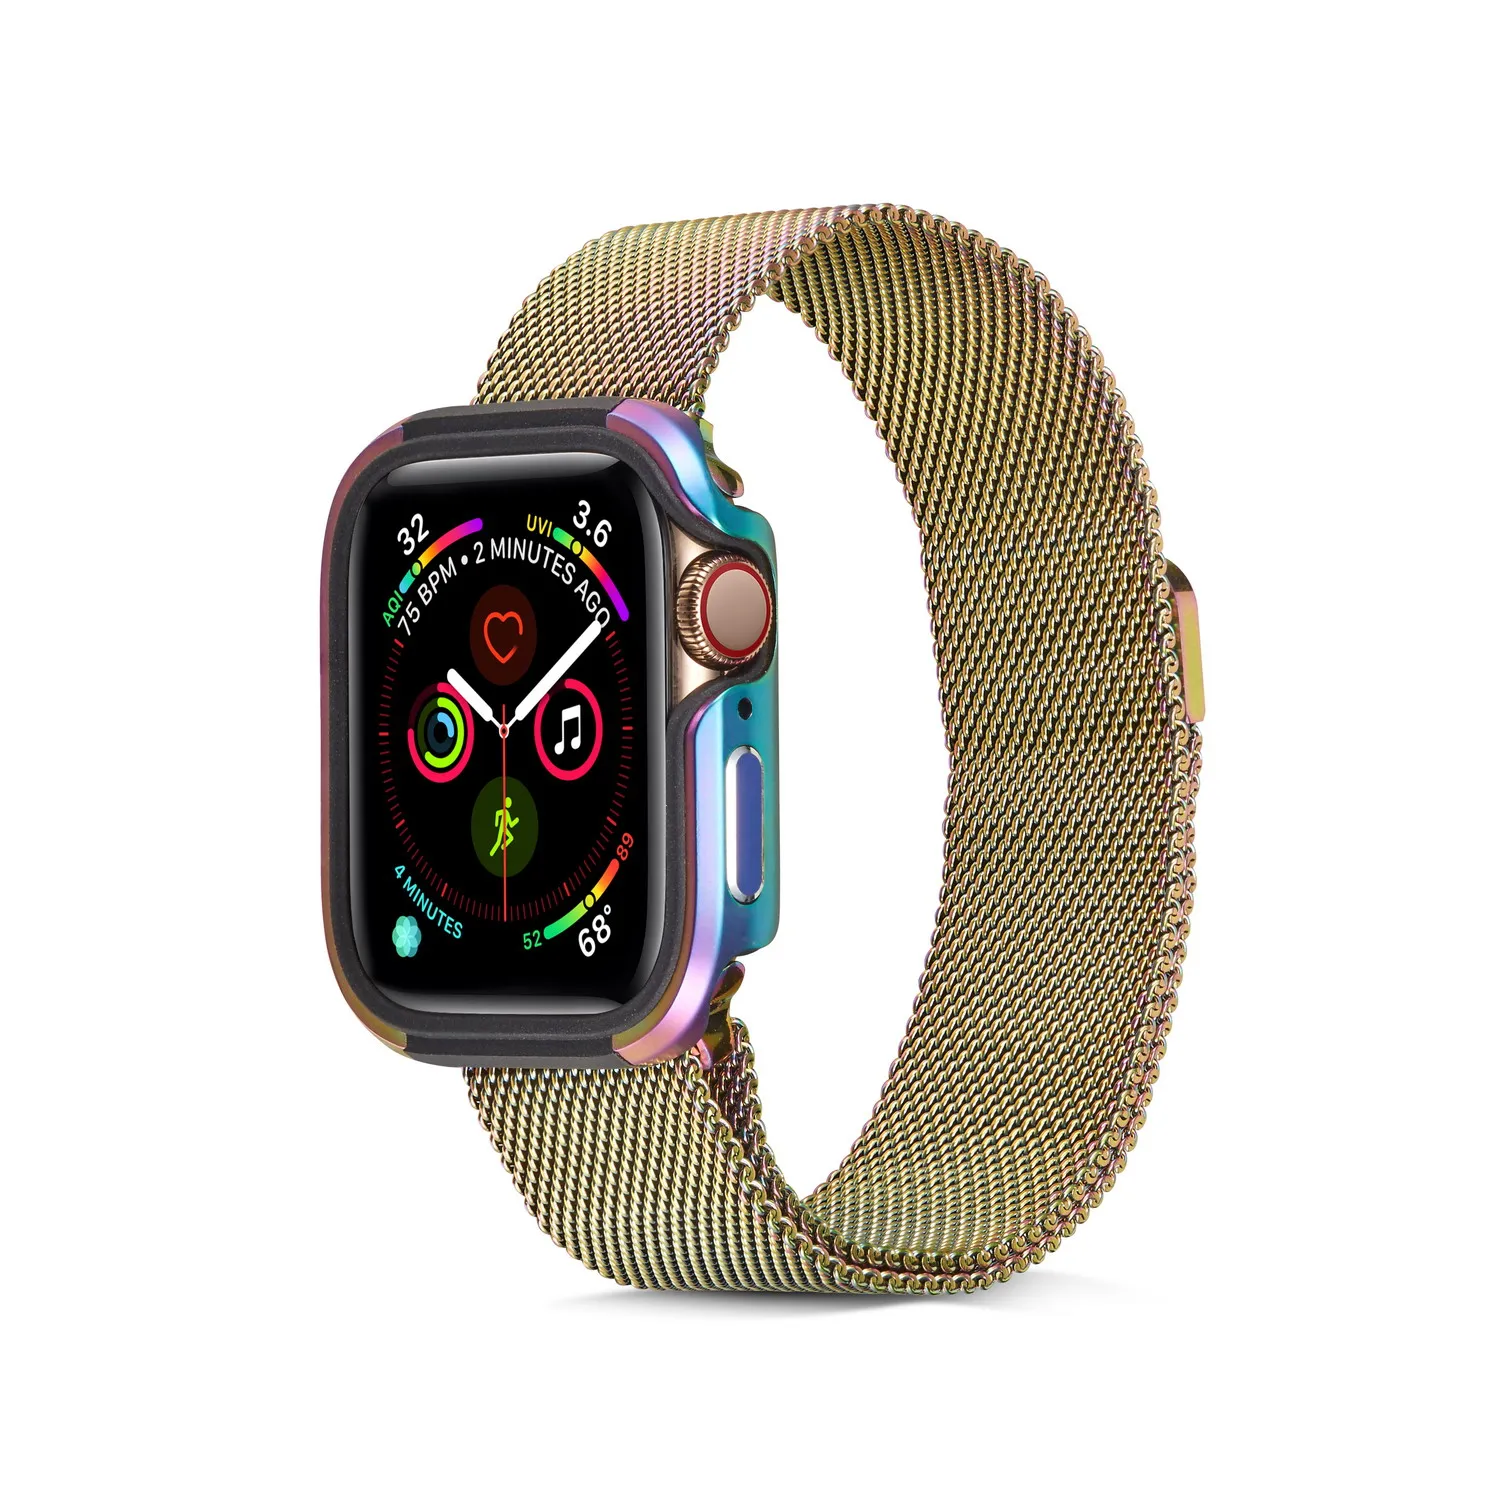 Для Apple Watch Series 5 4 40/44 мм Чехол Премиум Алюминий+ TPU бамперная рама чехол Series 5 браслет для часов «Миланская петля ремешок на запястье браслет